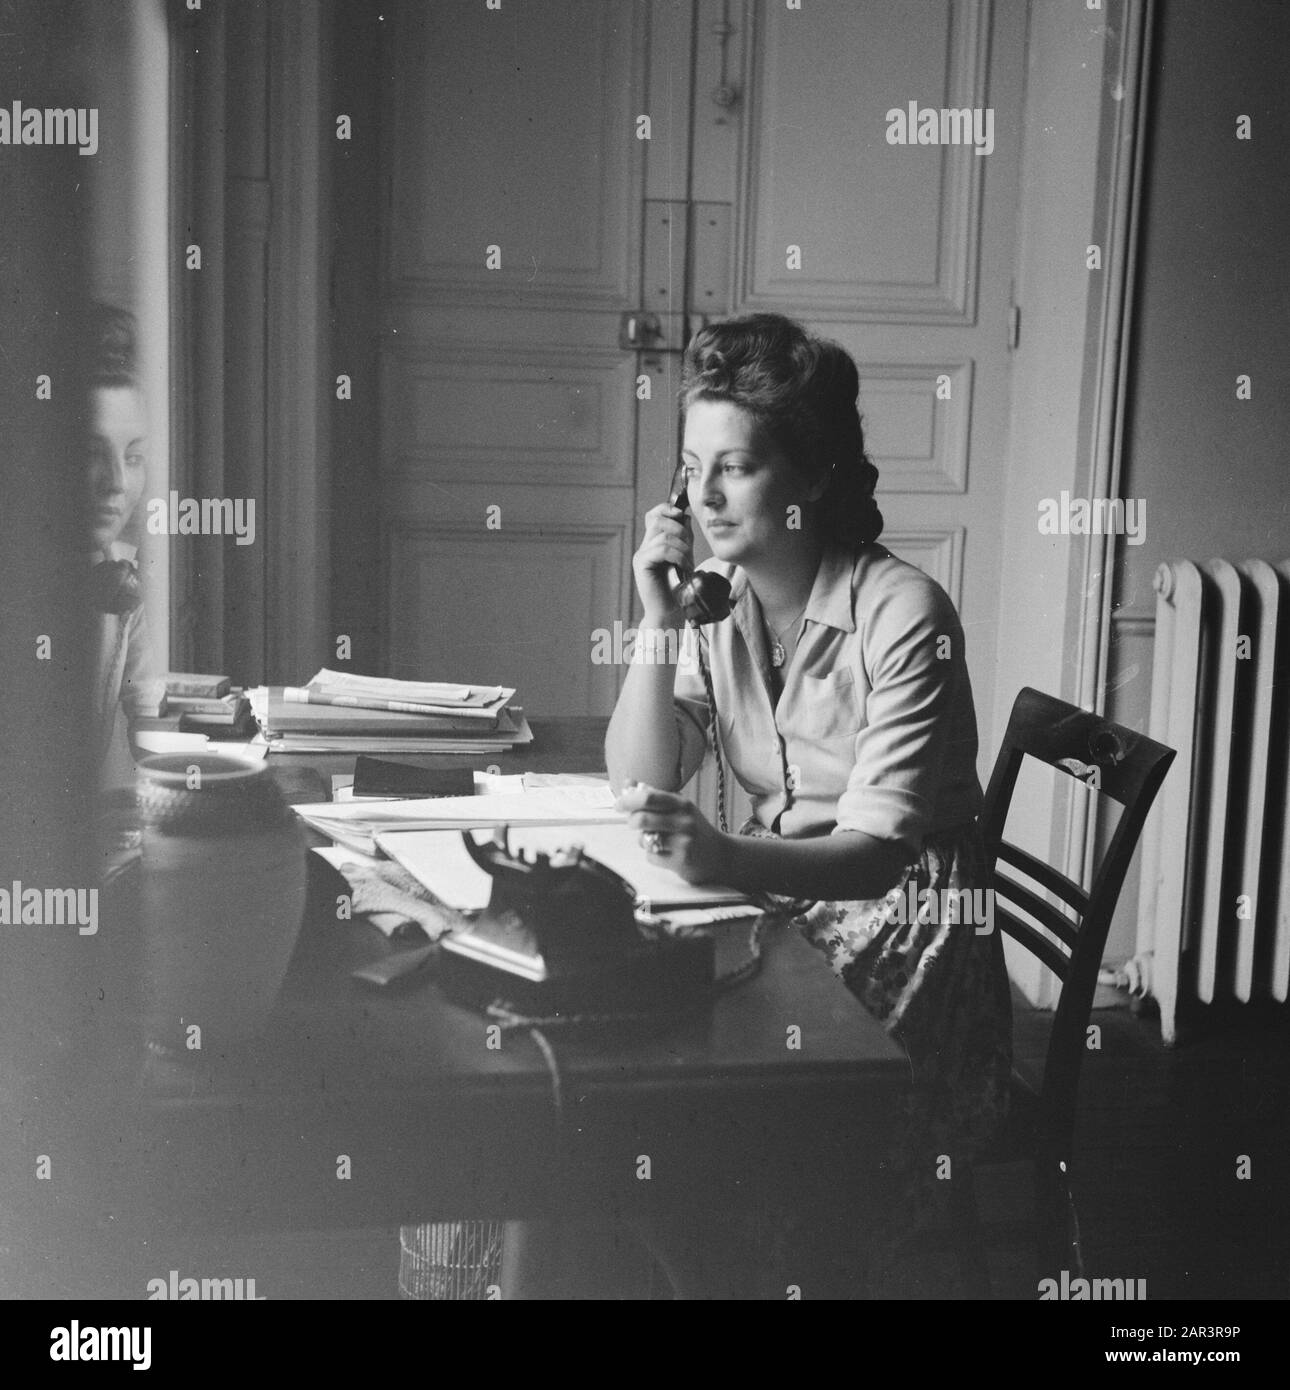 Ambassade des Pays-Bas à Paris (1945) Téléphoniste Date: 1945 lieu: France,  Paris mots clés: Diplomatie, opérateurs téléphoniques Photo Stock - Alamy